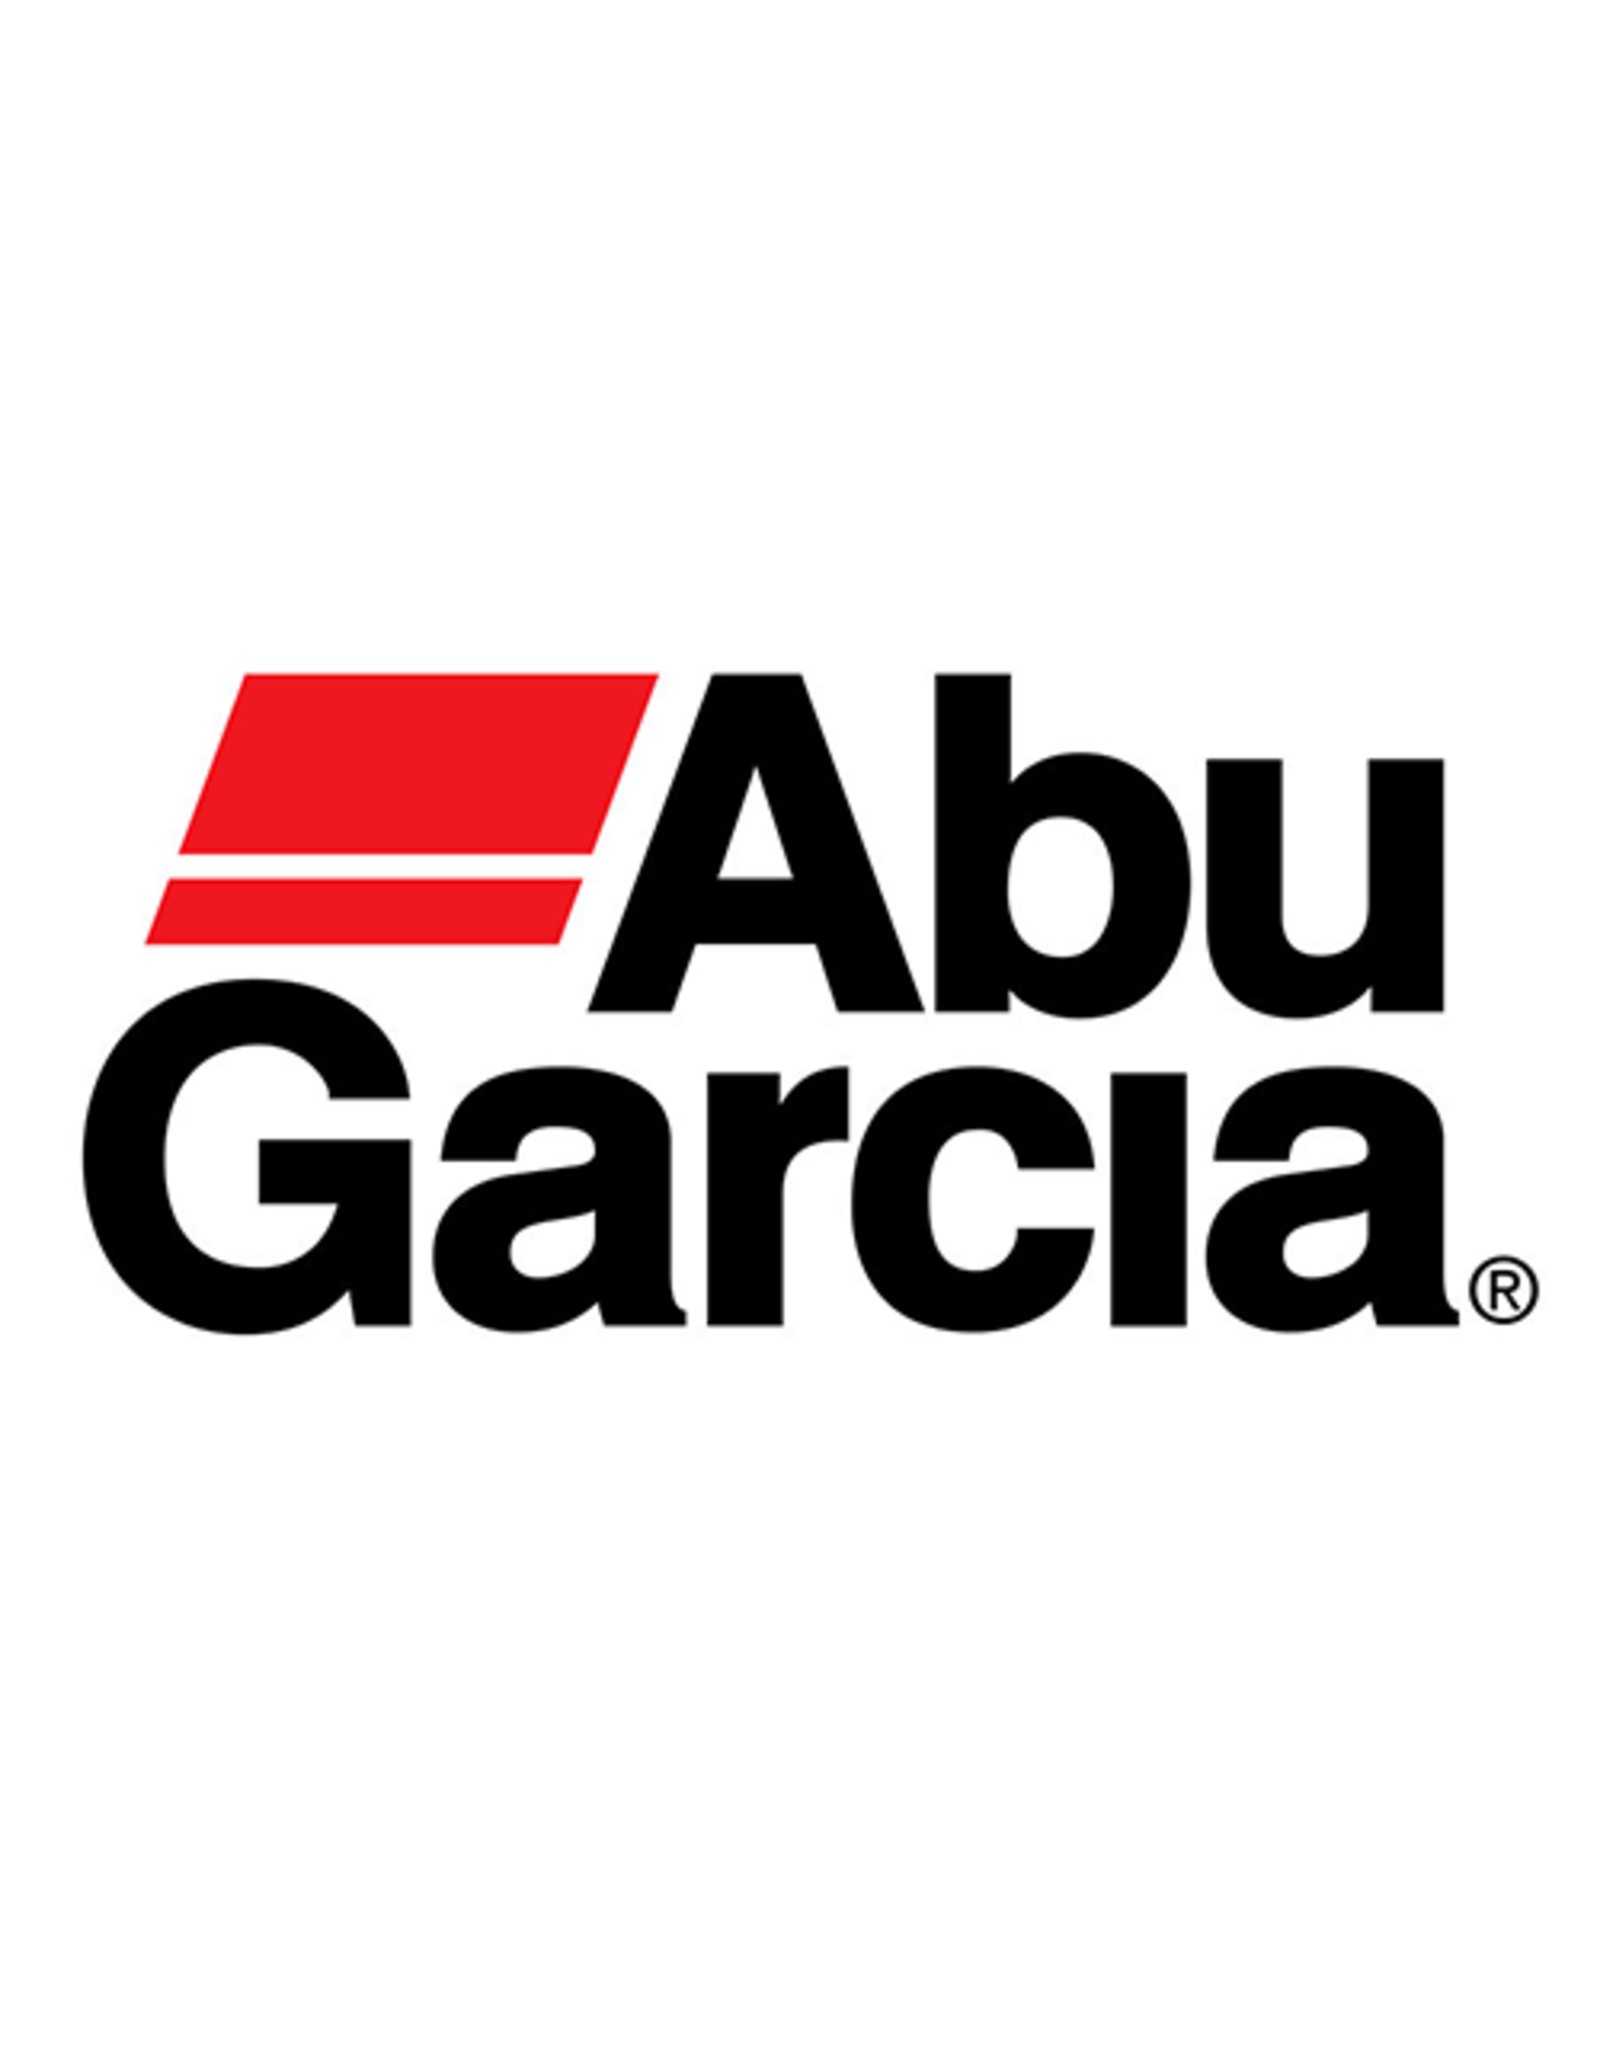 Abu Garcia 20742  POSITION HOLDER